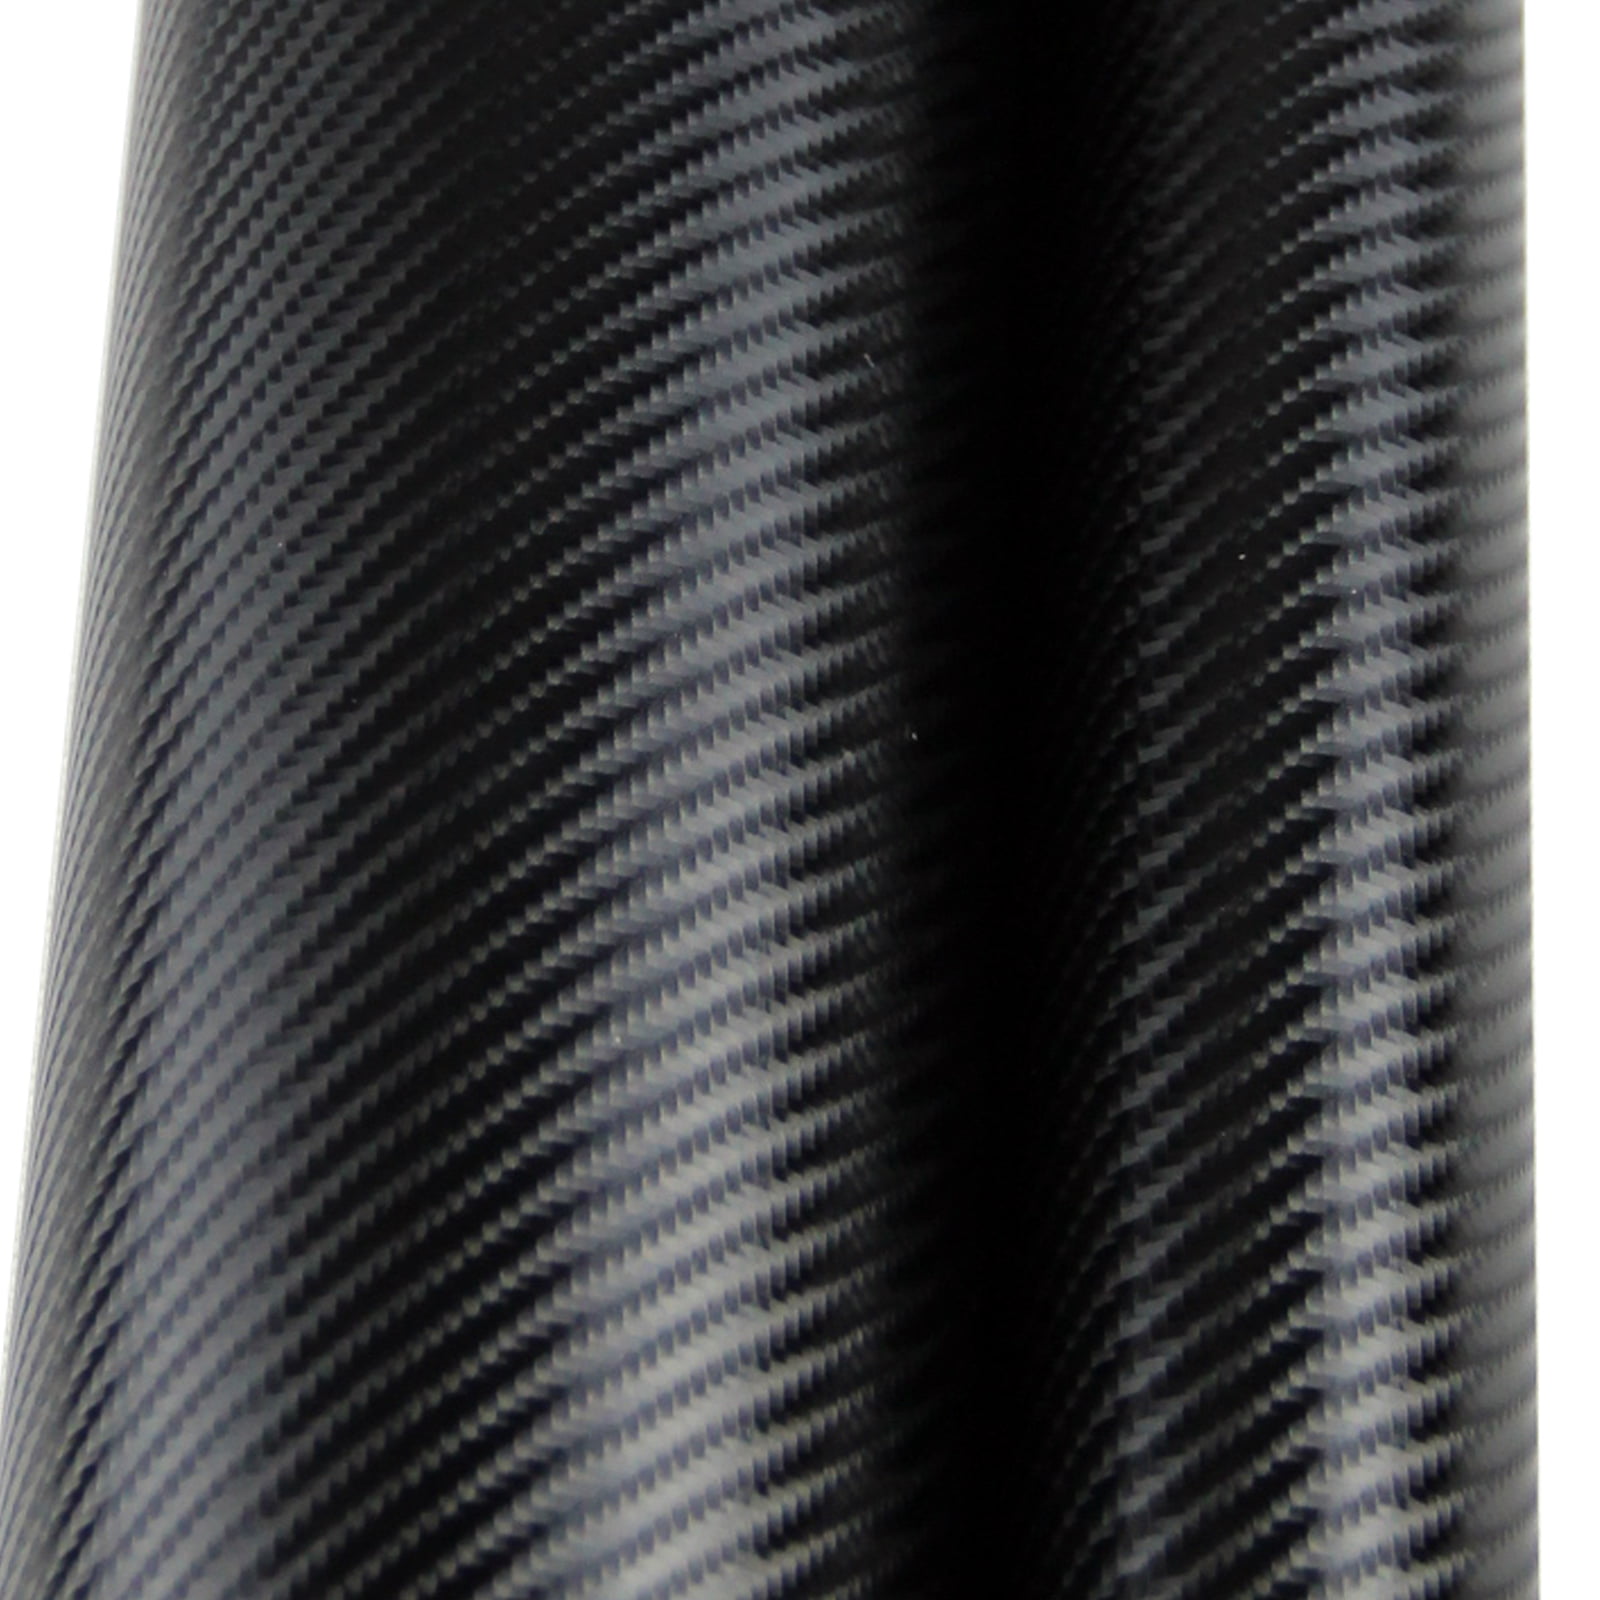 24" x 60" 4D Premium Black Carbon Fiber Vinyl Wrap Bubble Free Air Release 